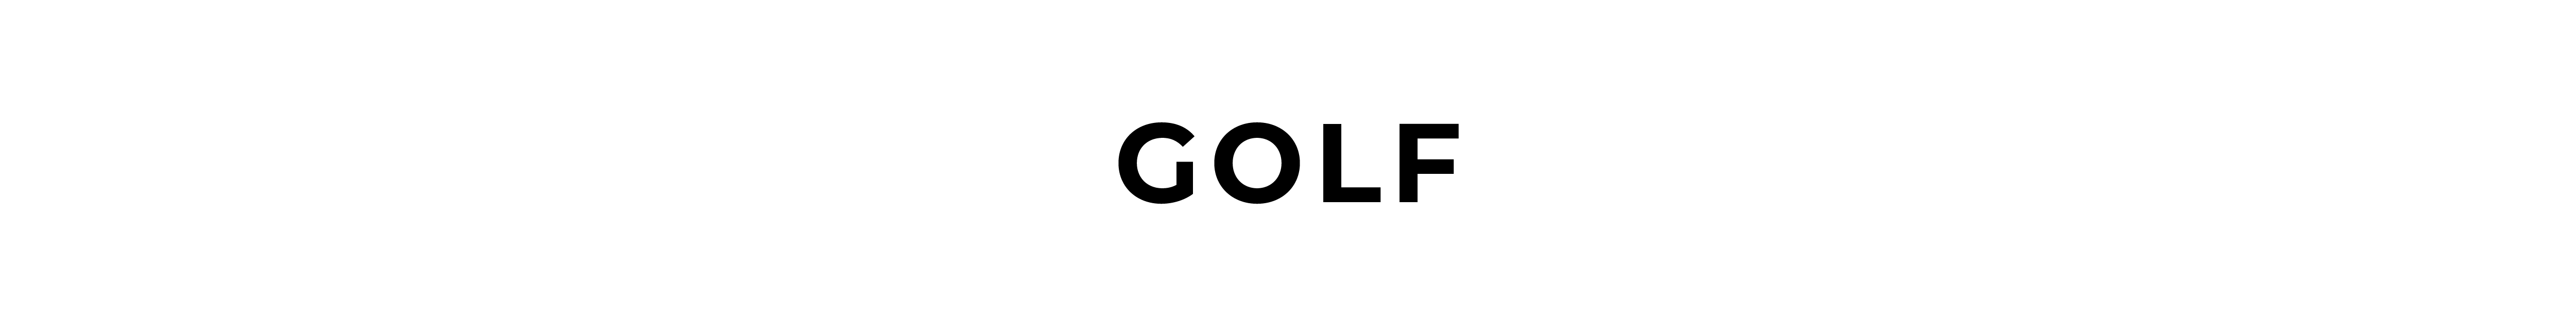 Men's Golf Eyeglasses